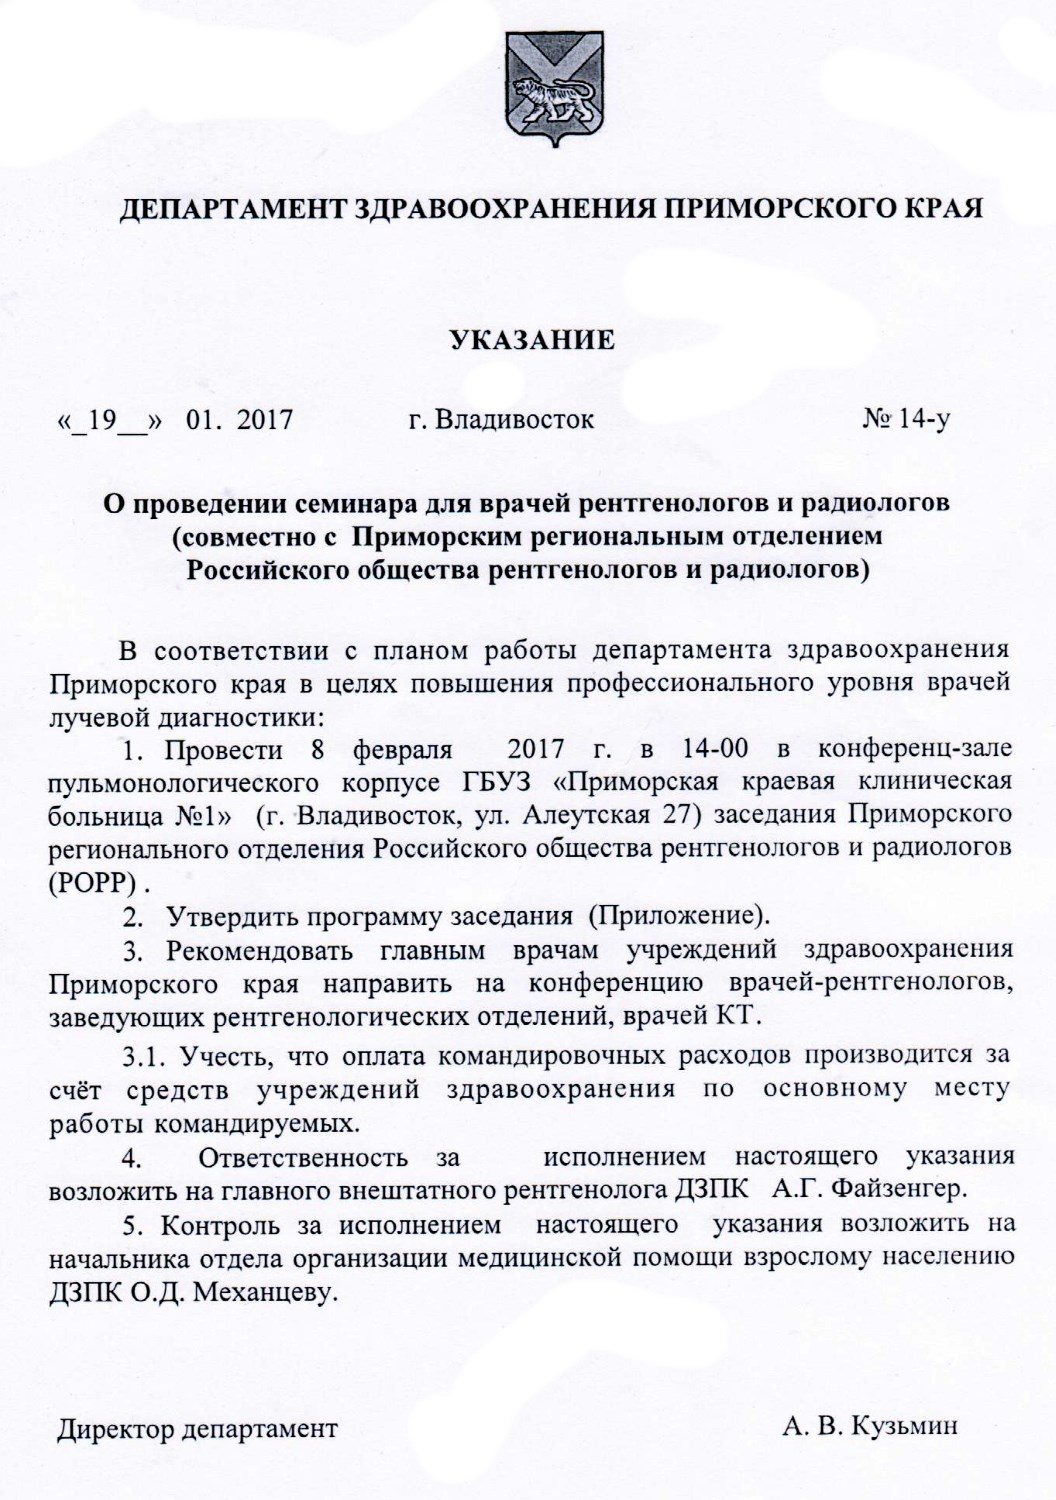 Указание от 19.01.2017 г. Владивосток №14-У